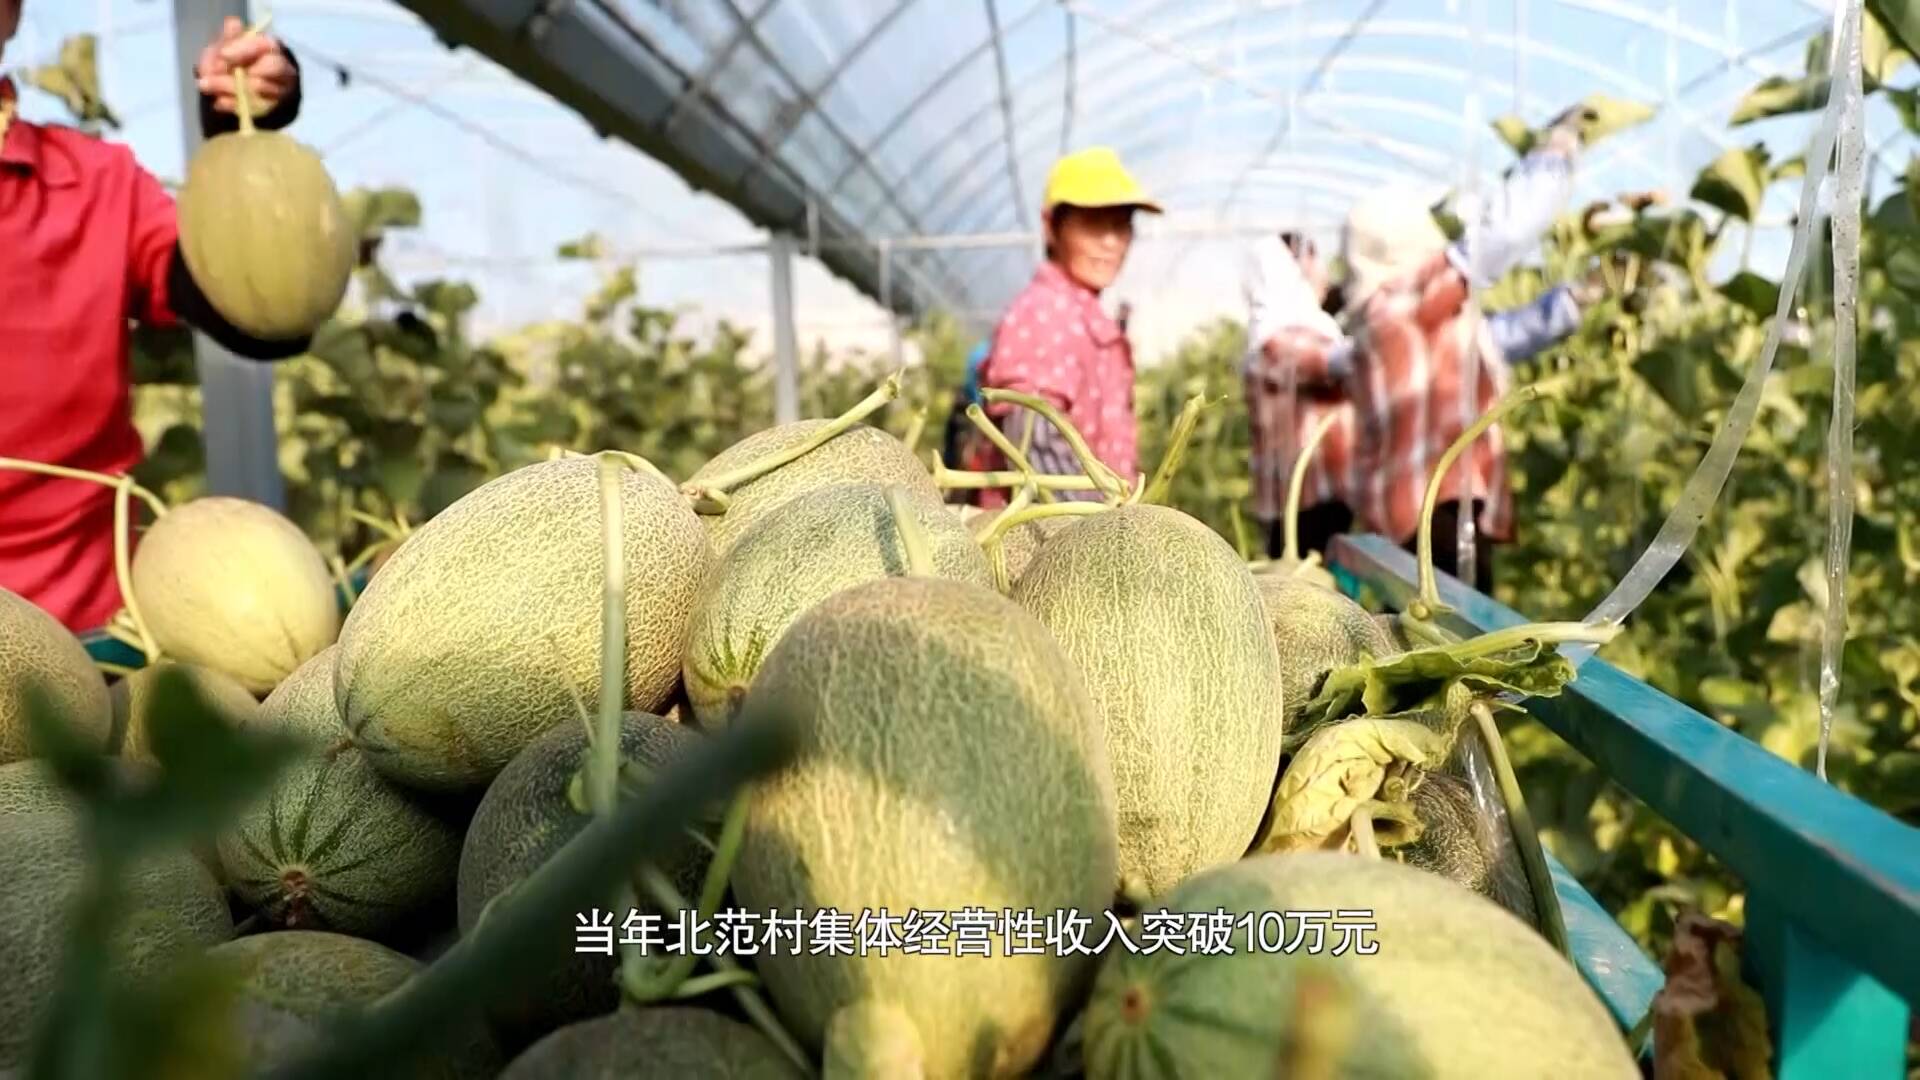 发展网纹瓜等特色果蔬种植 东营杨庙社区村民的日子比瓜还甜